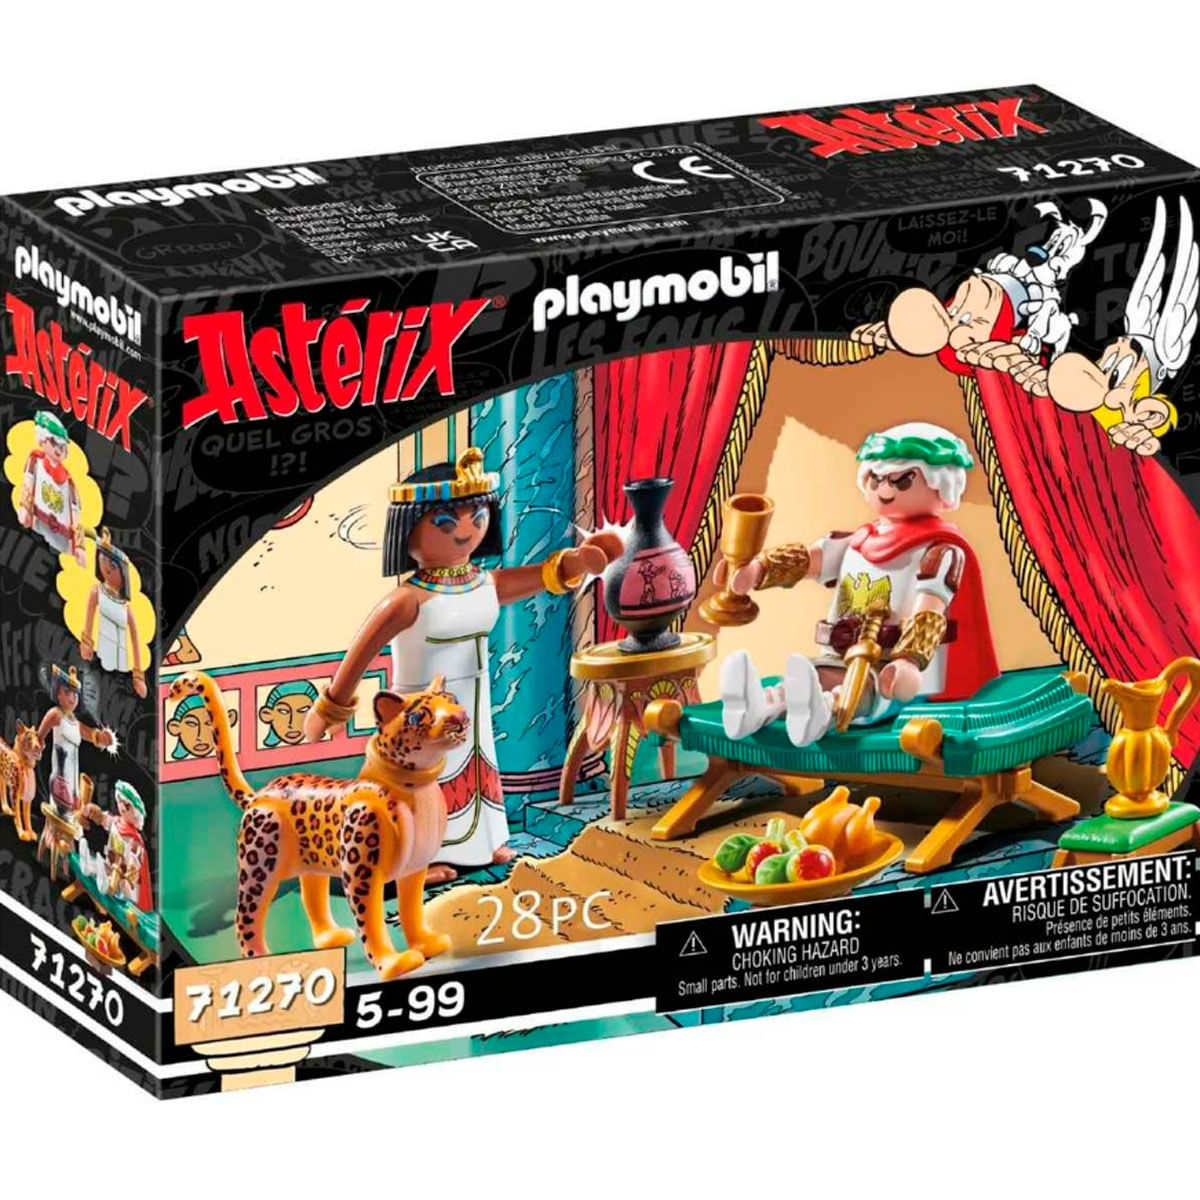 Playmobil Astérix: César y Cleopatra